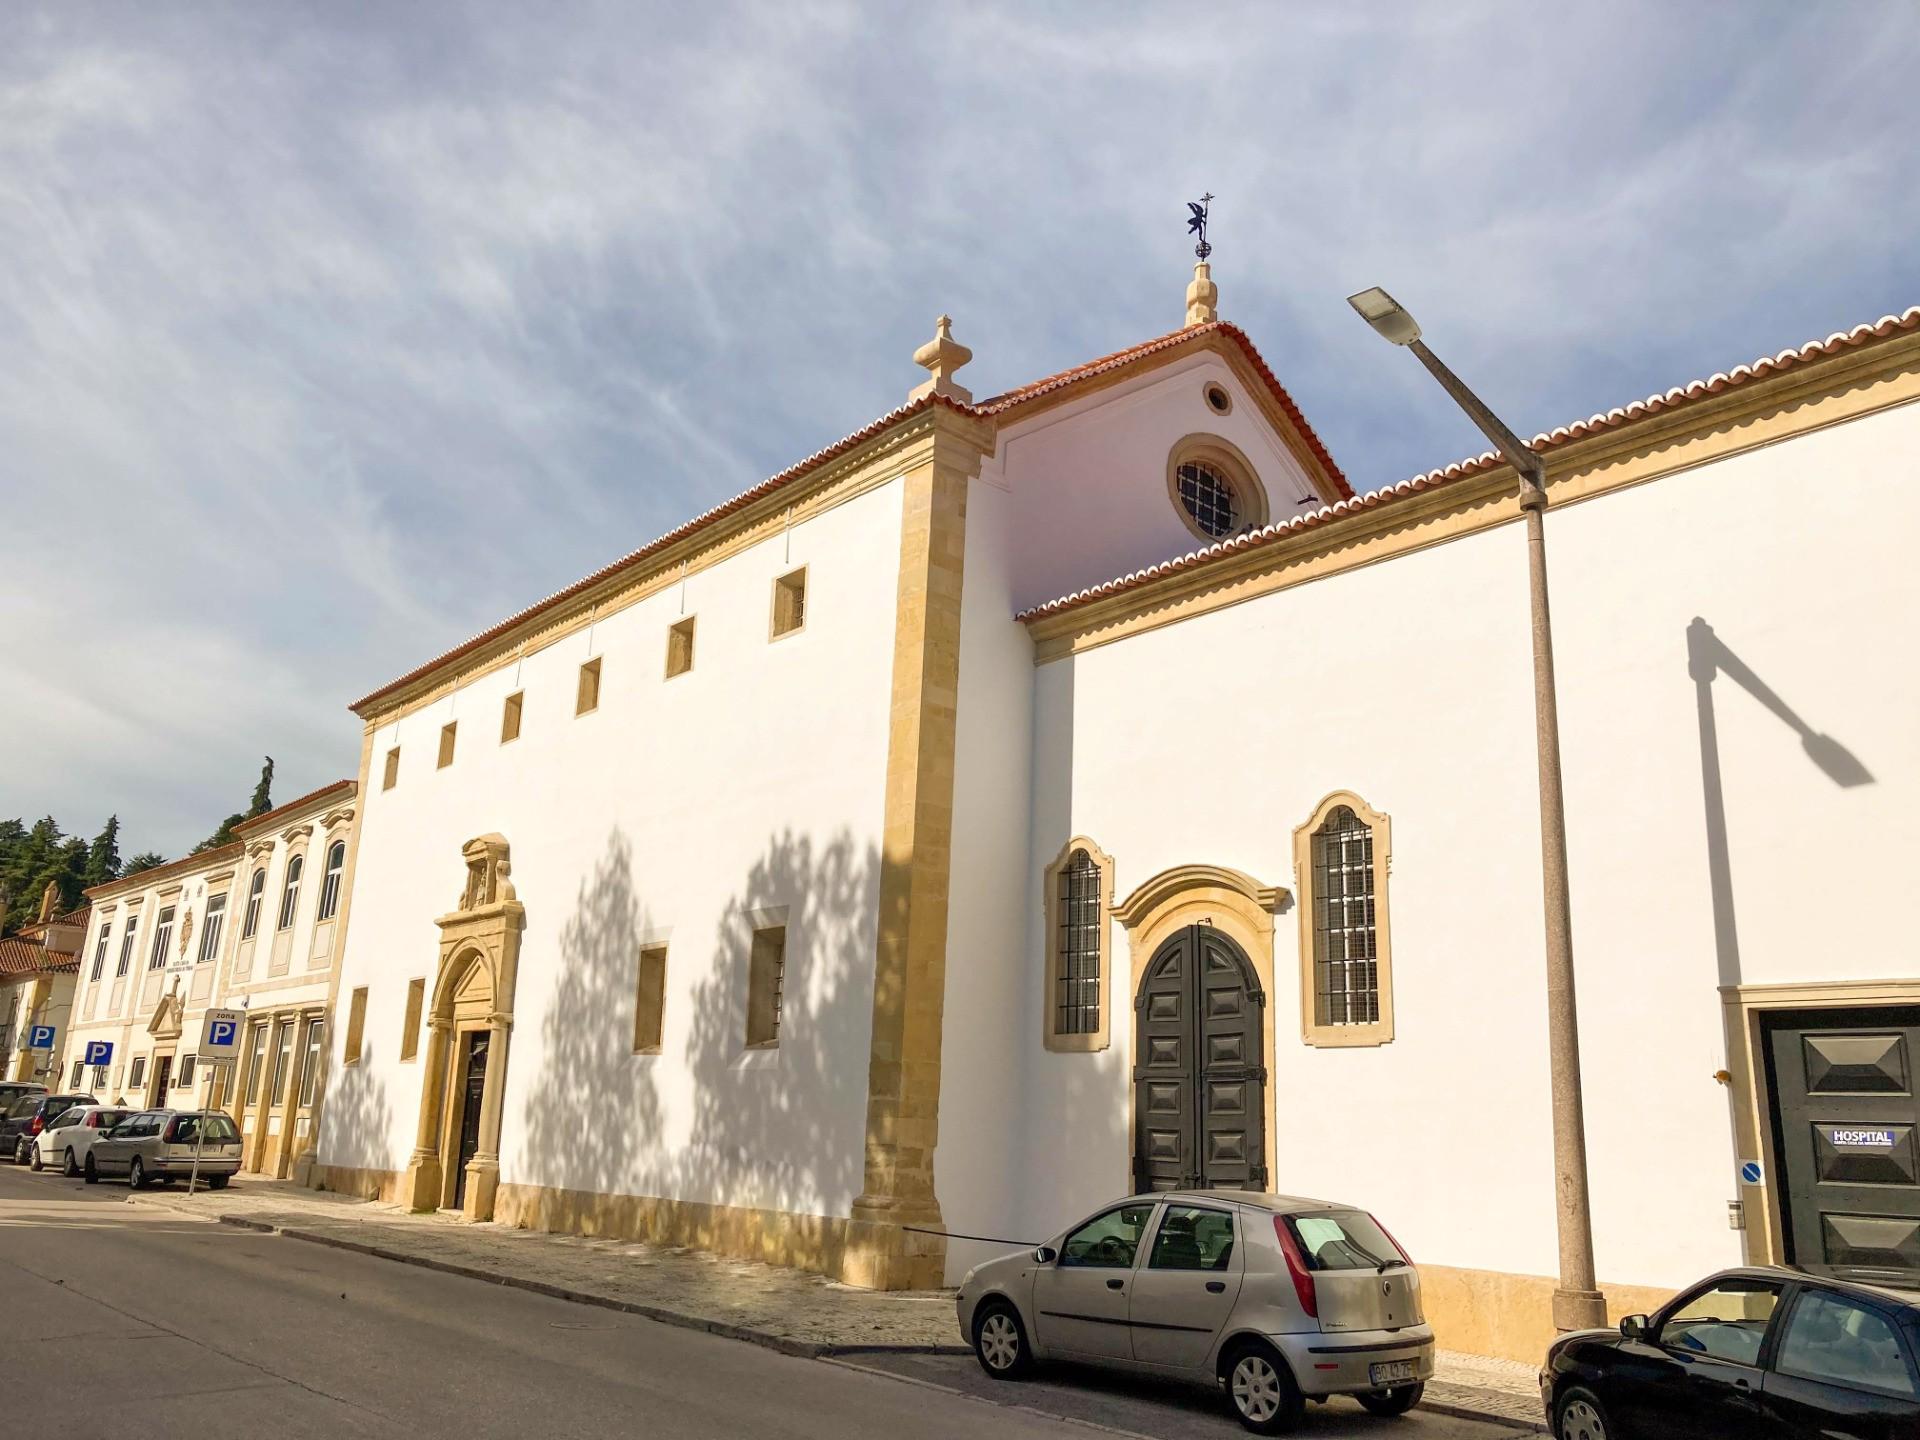 Enquadramento - também conhecida como Igreja da Misericórdia. A Santa Casa da Misericórdia de Tomar foi estabelecida pelo Rei D. Manuel I, no ano de 1510, sendo-lhe anexado o Hospital de Nossa Senhora da Graça.